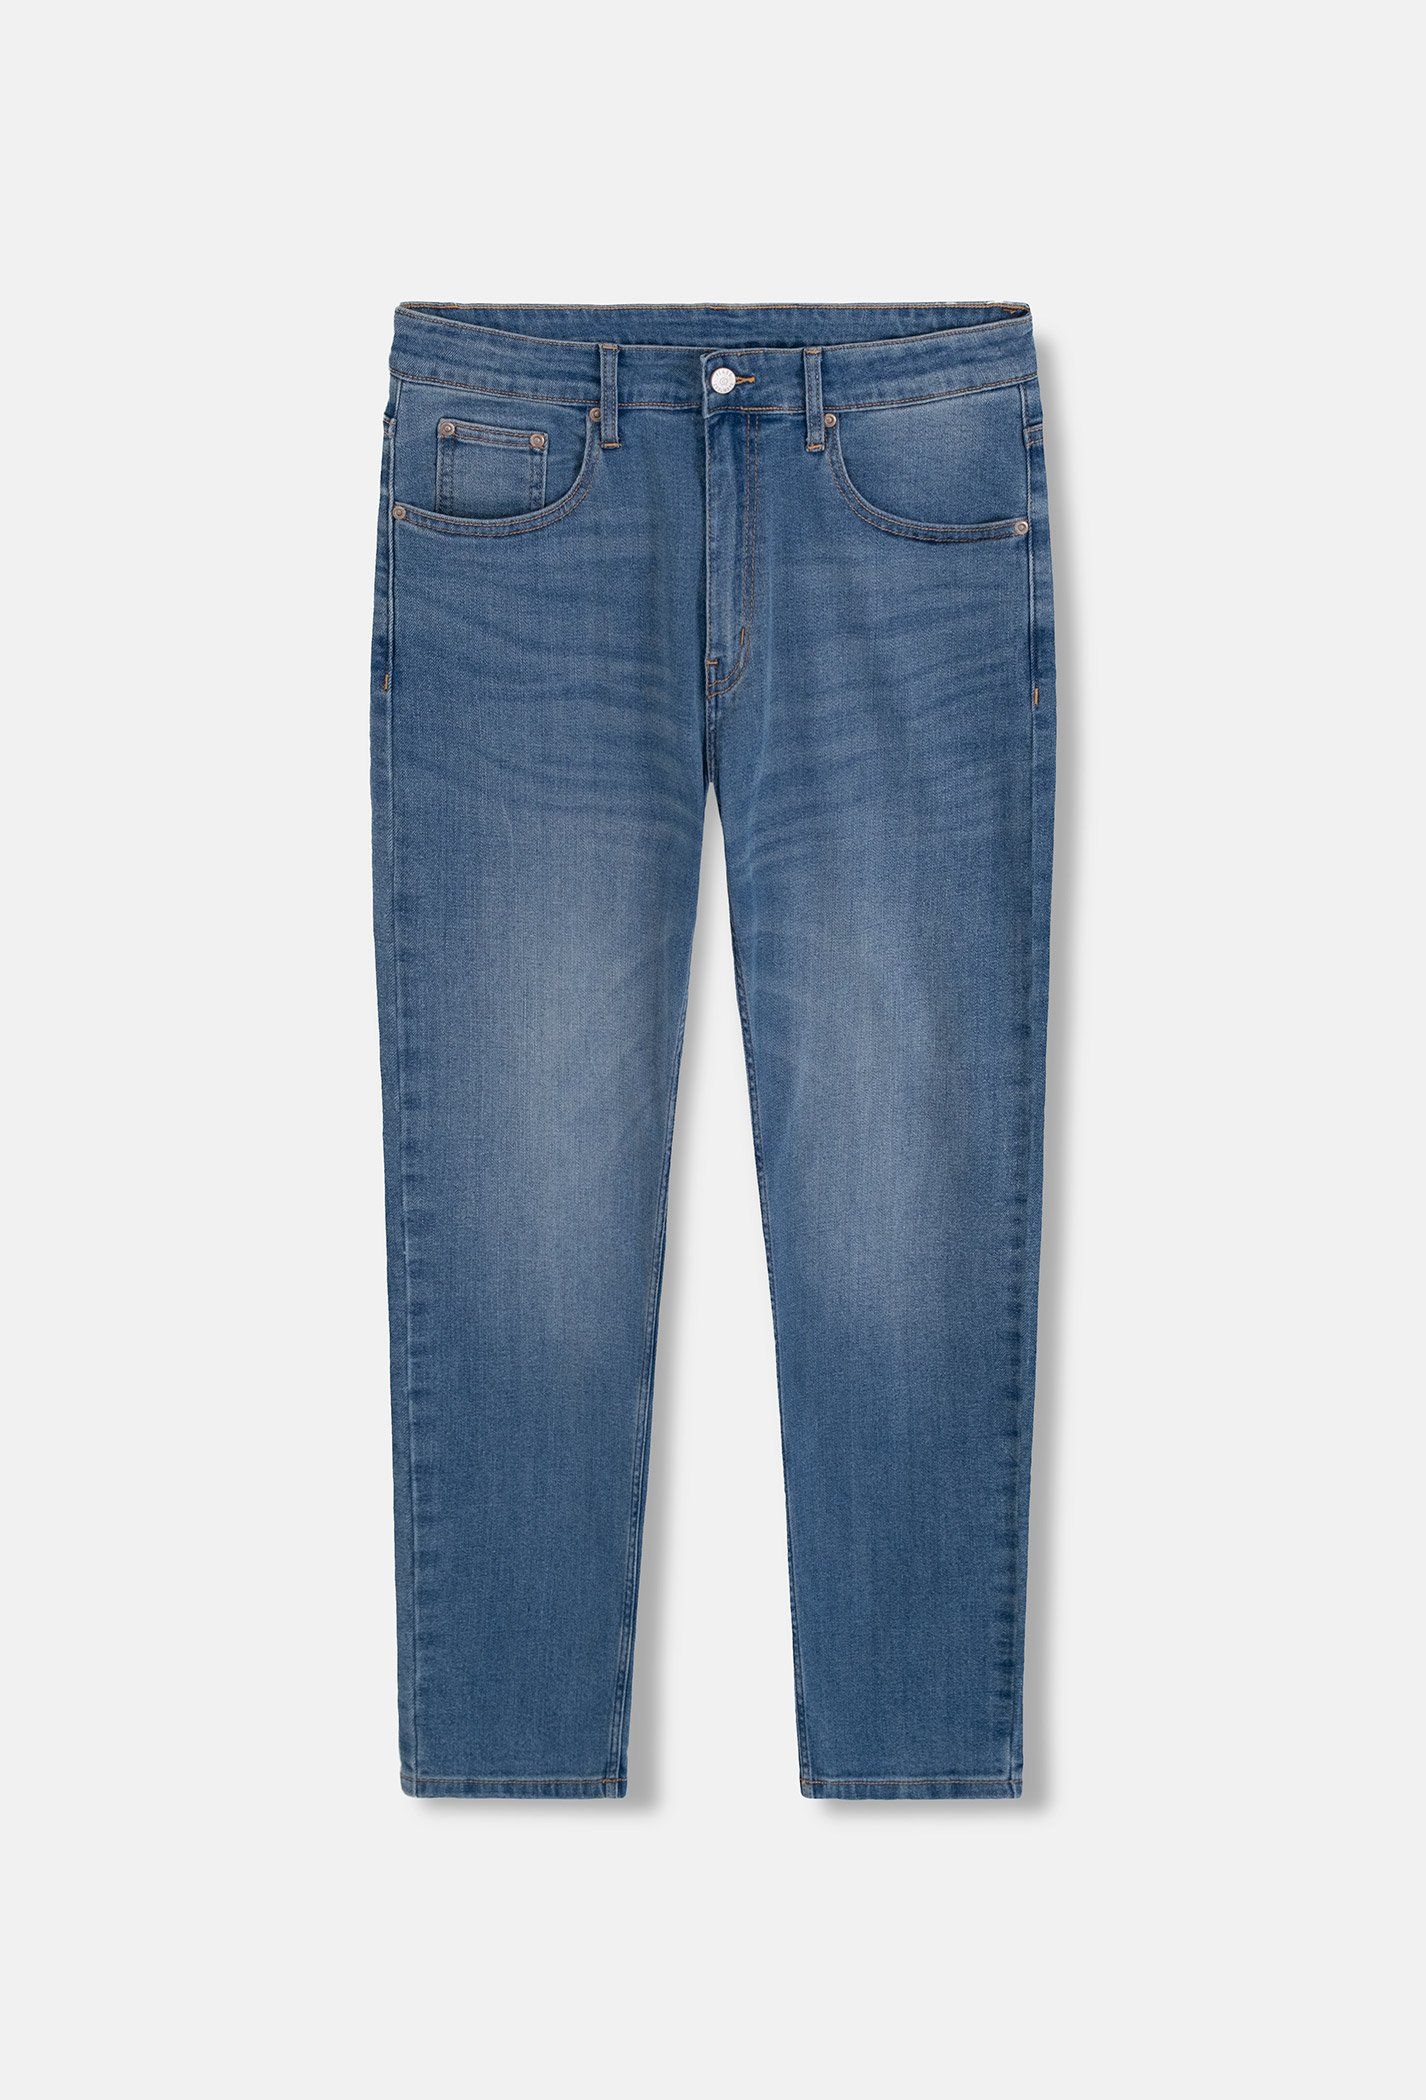 Quần Jeans Basic Slimfit Xanh sáng 1